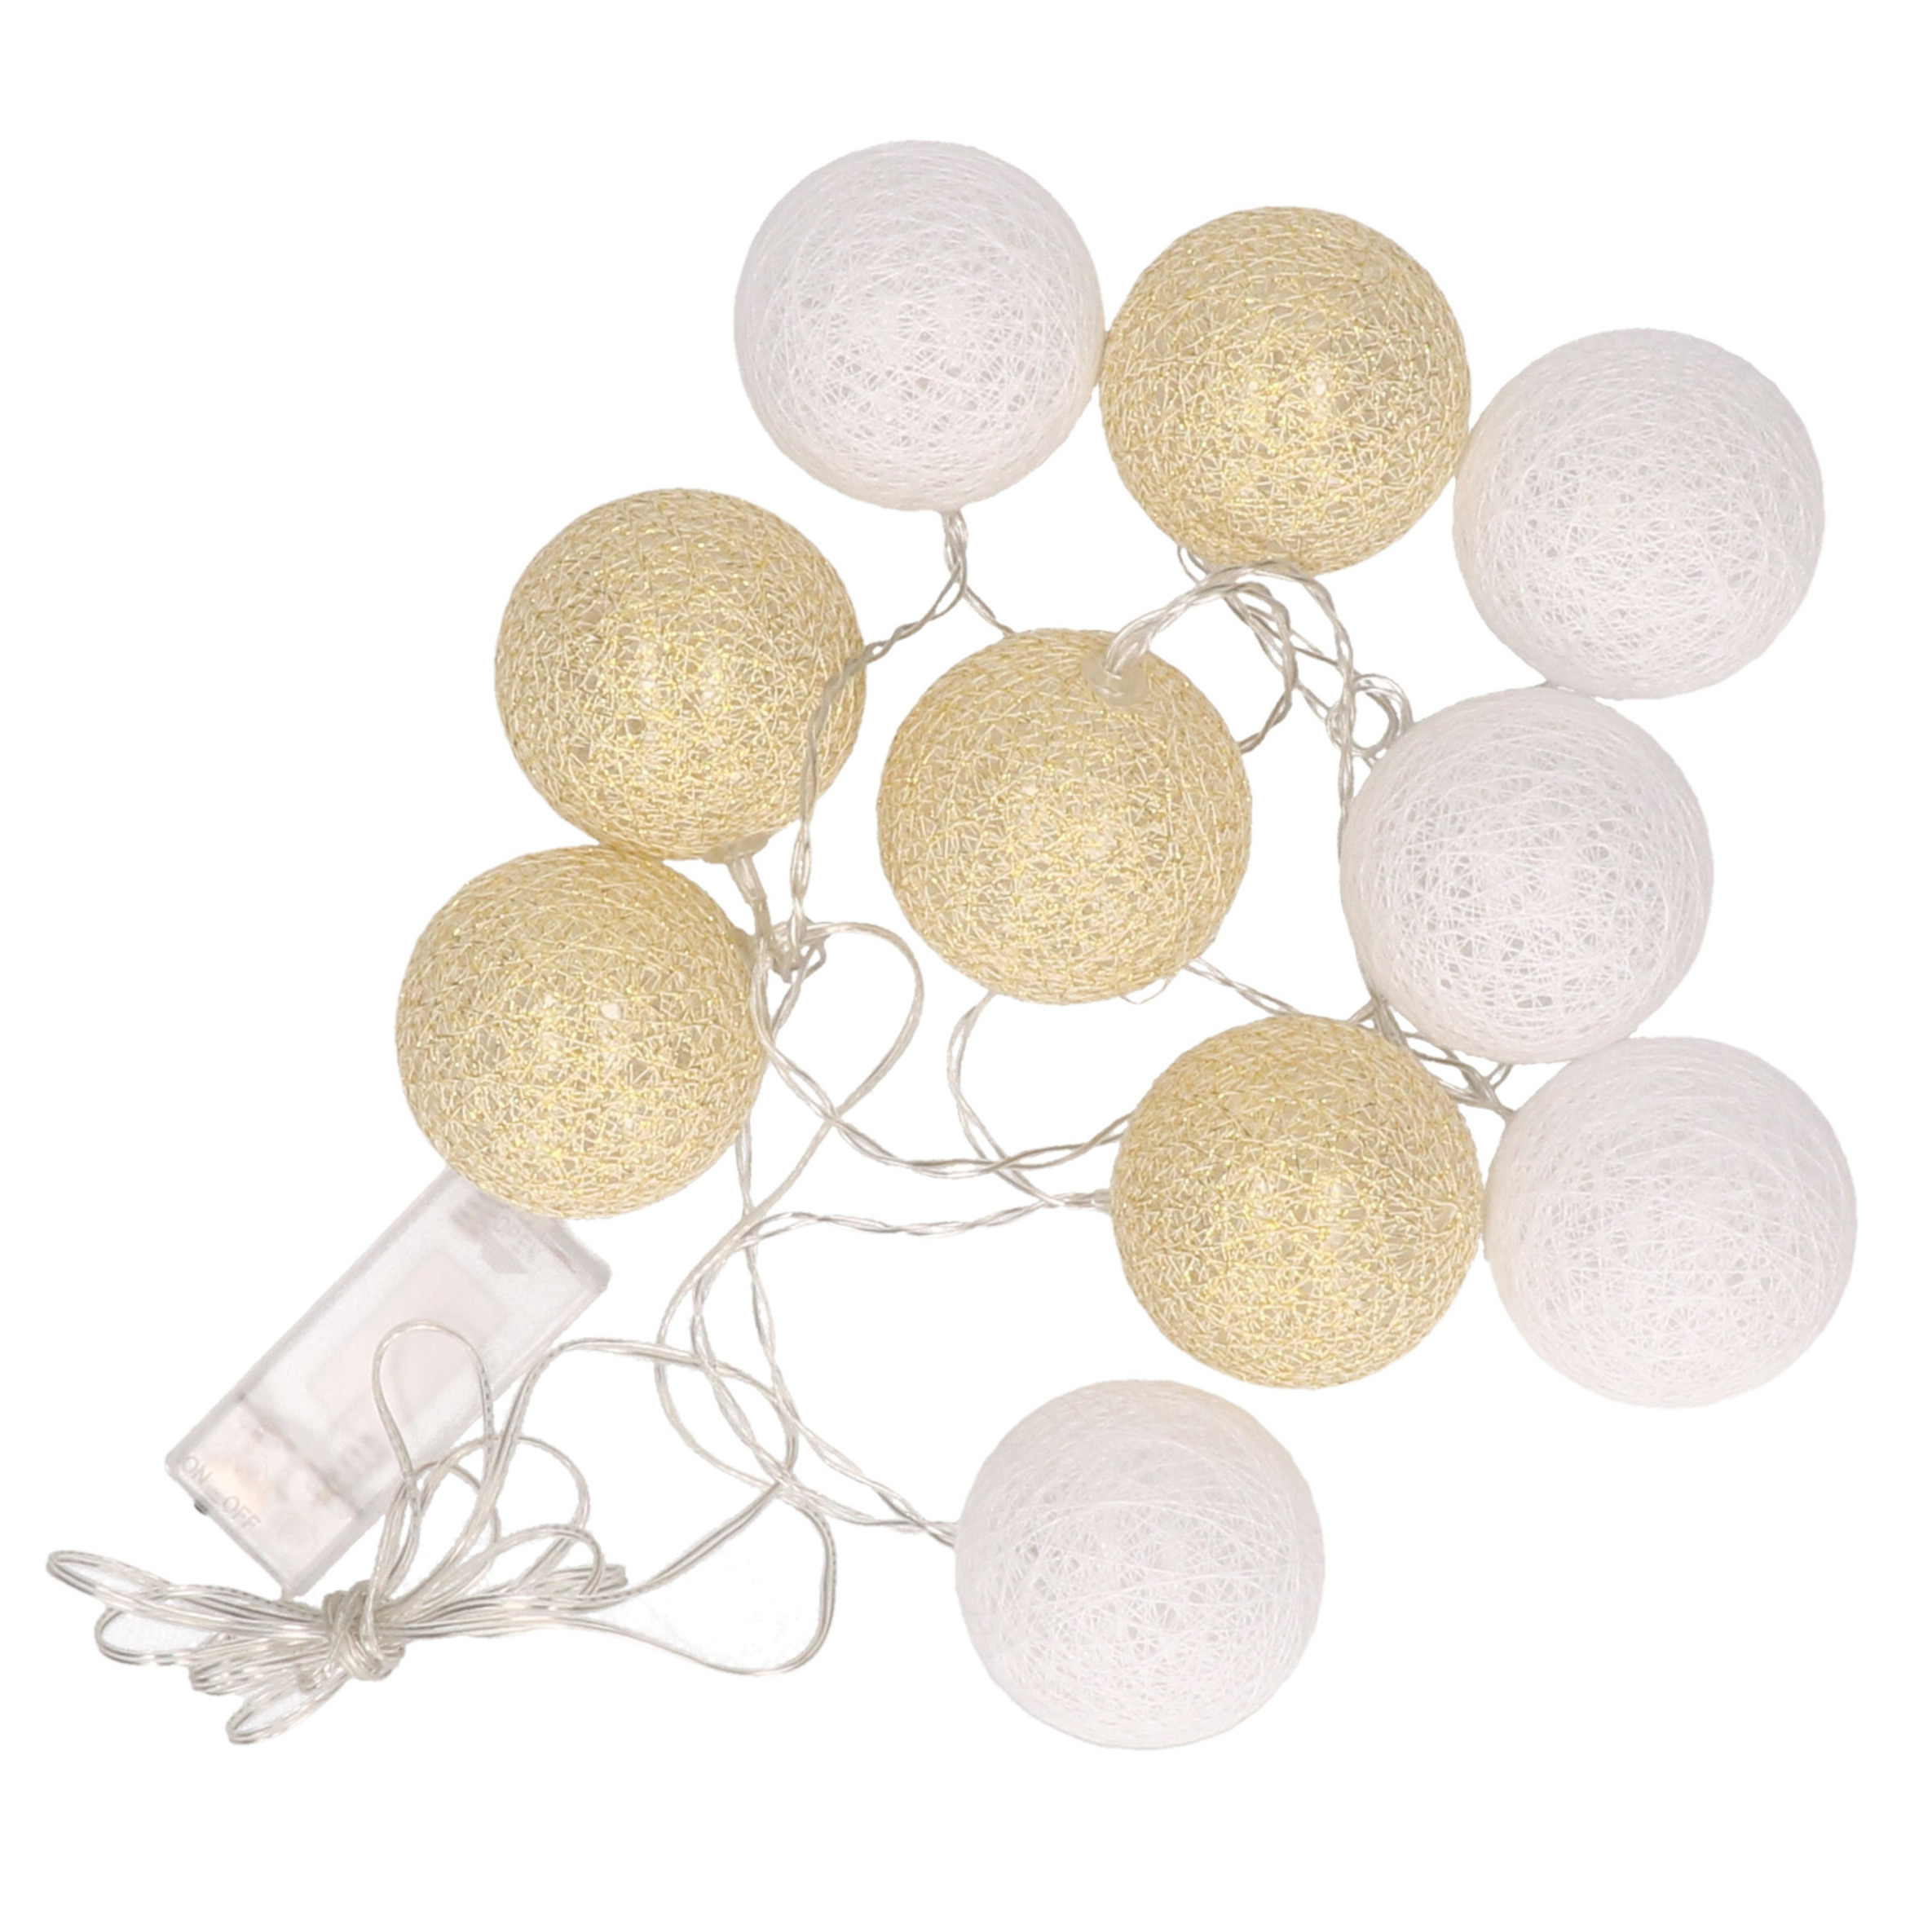 Feestverlichting lichtsnoer met katoenen balletjes wit-goud 300 cm